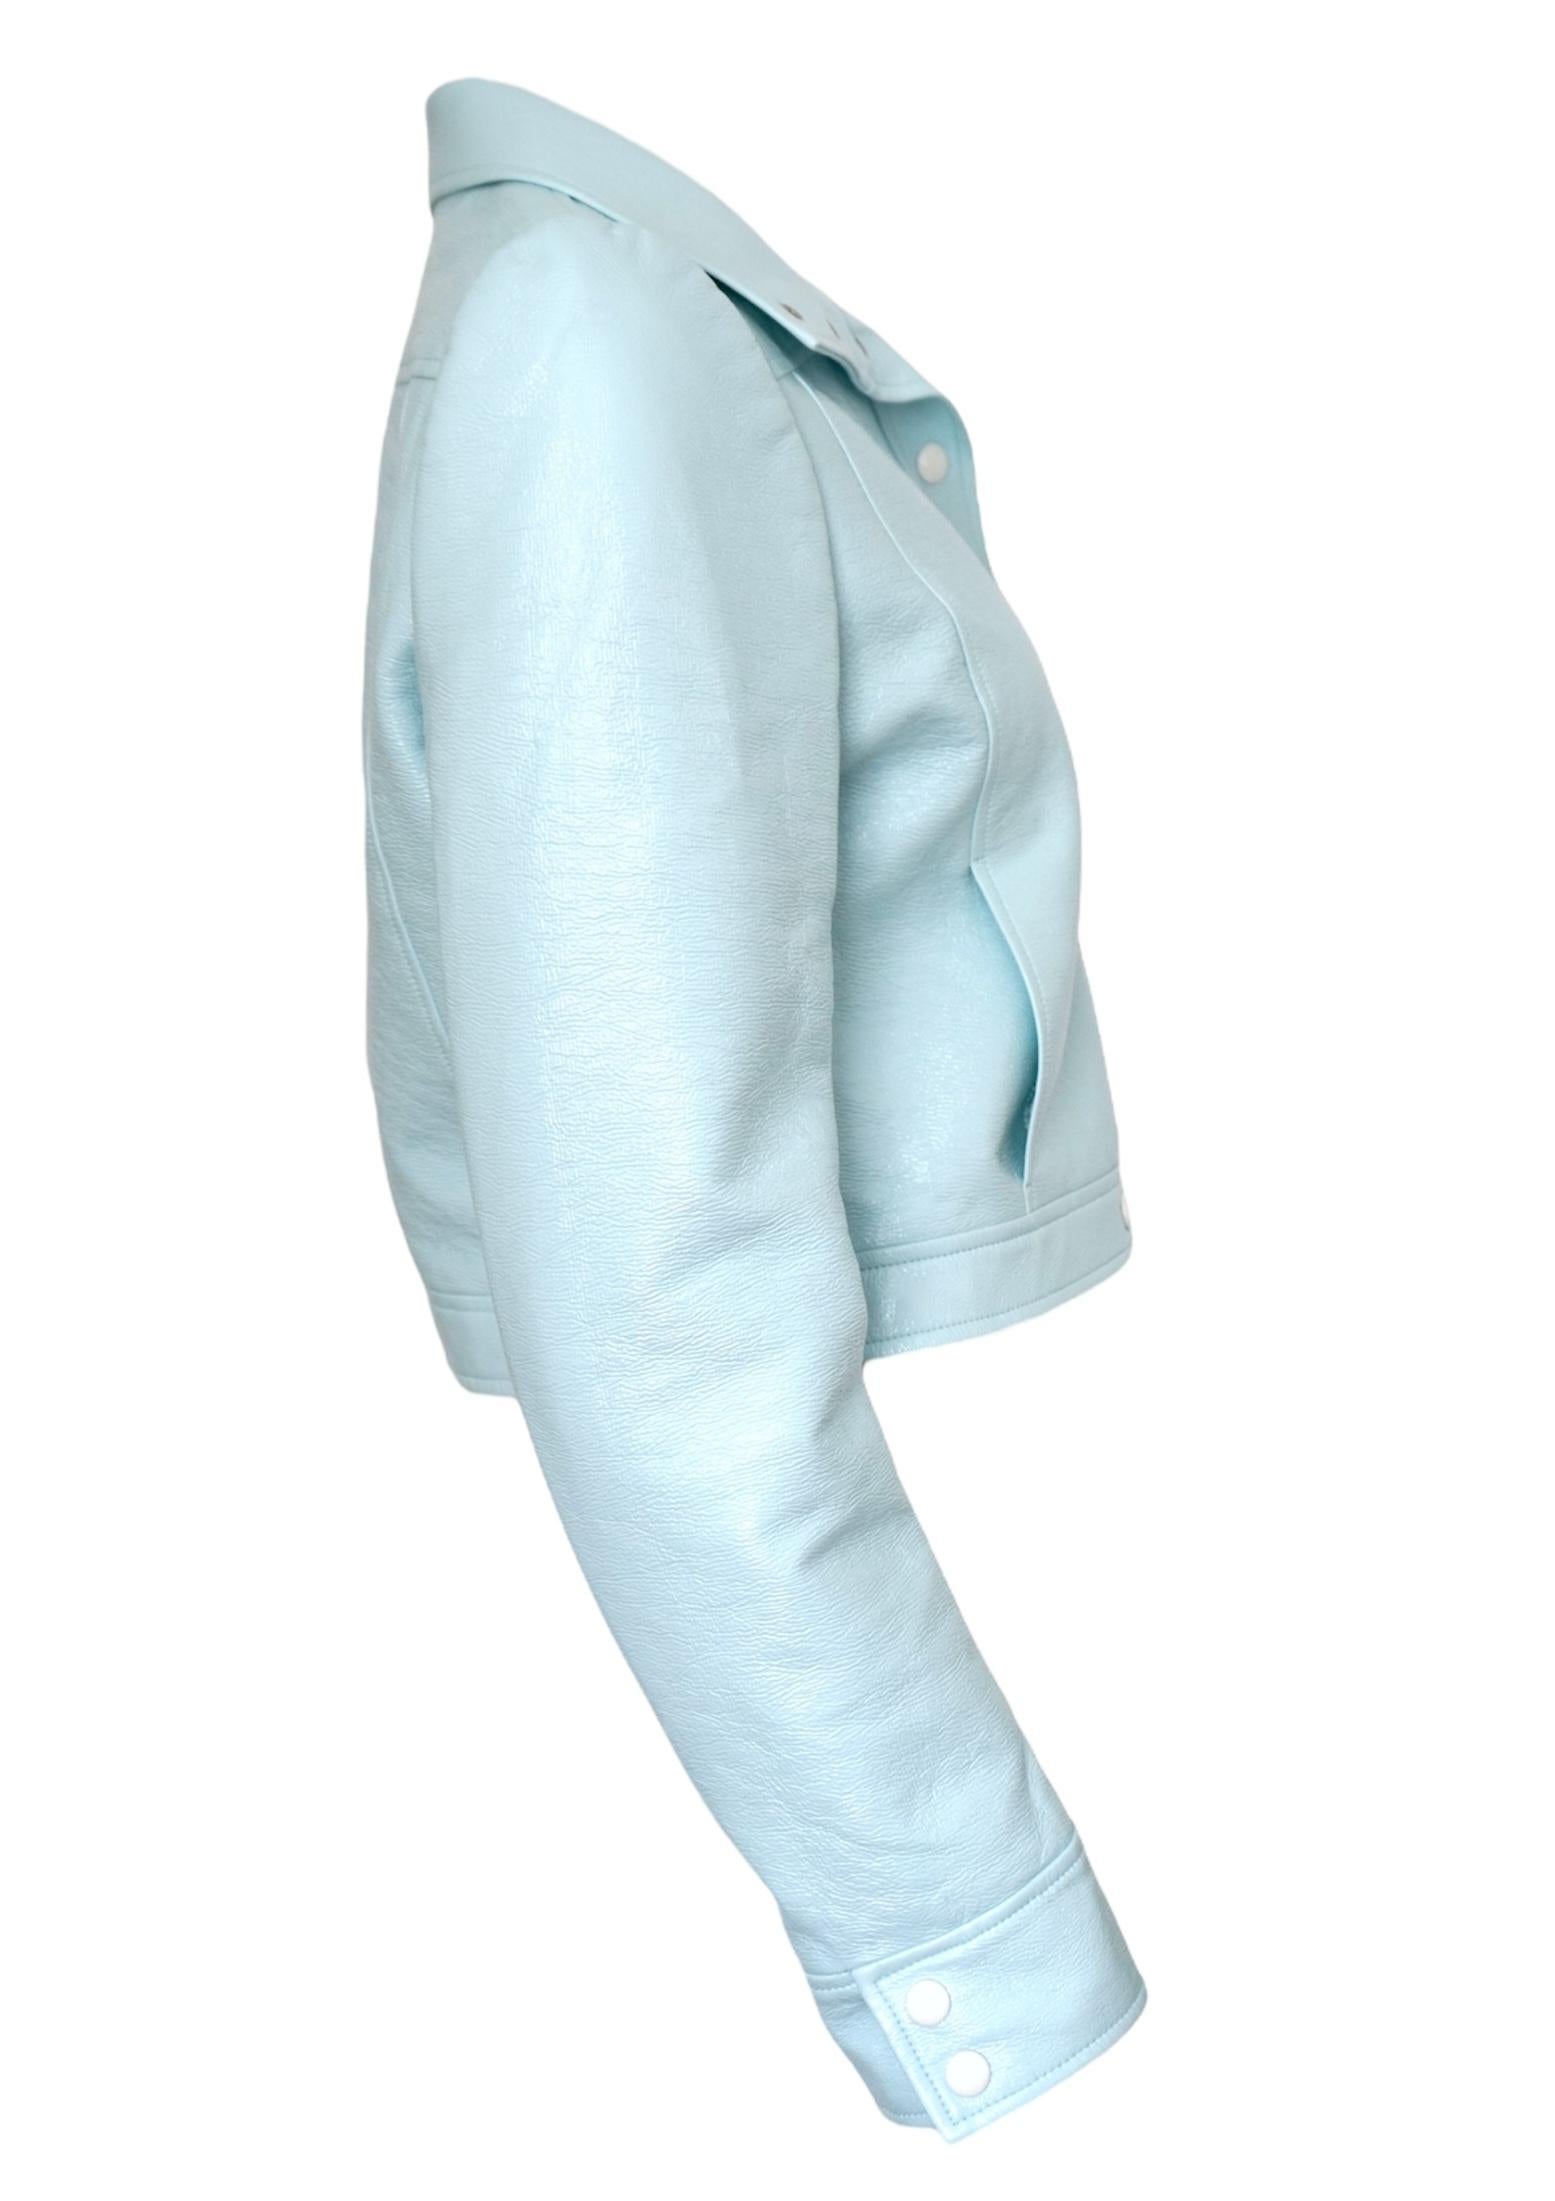 Veste en vinyle bleu pastel de COURRÈGES en coton mélangé, logo brodé sur la poitrine, col roulé, manches longues, fermeture par bouton sur le devant et deux poches latérales fendues.
Taille 42
Livré avec un sac à vêtements
Coton 88%, Polyuréthane